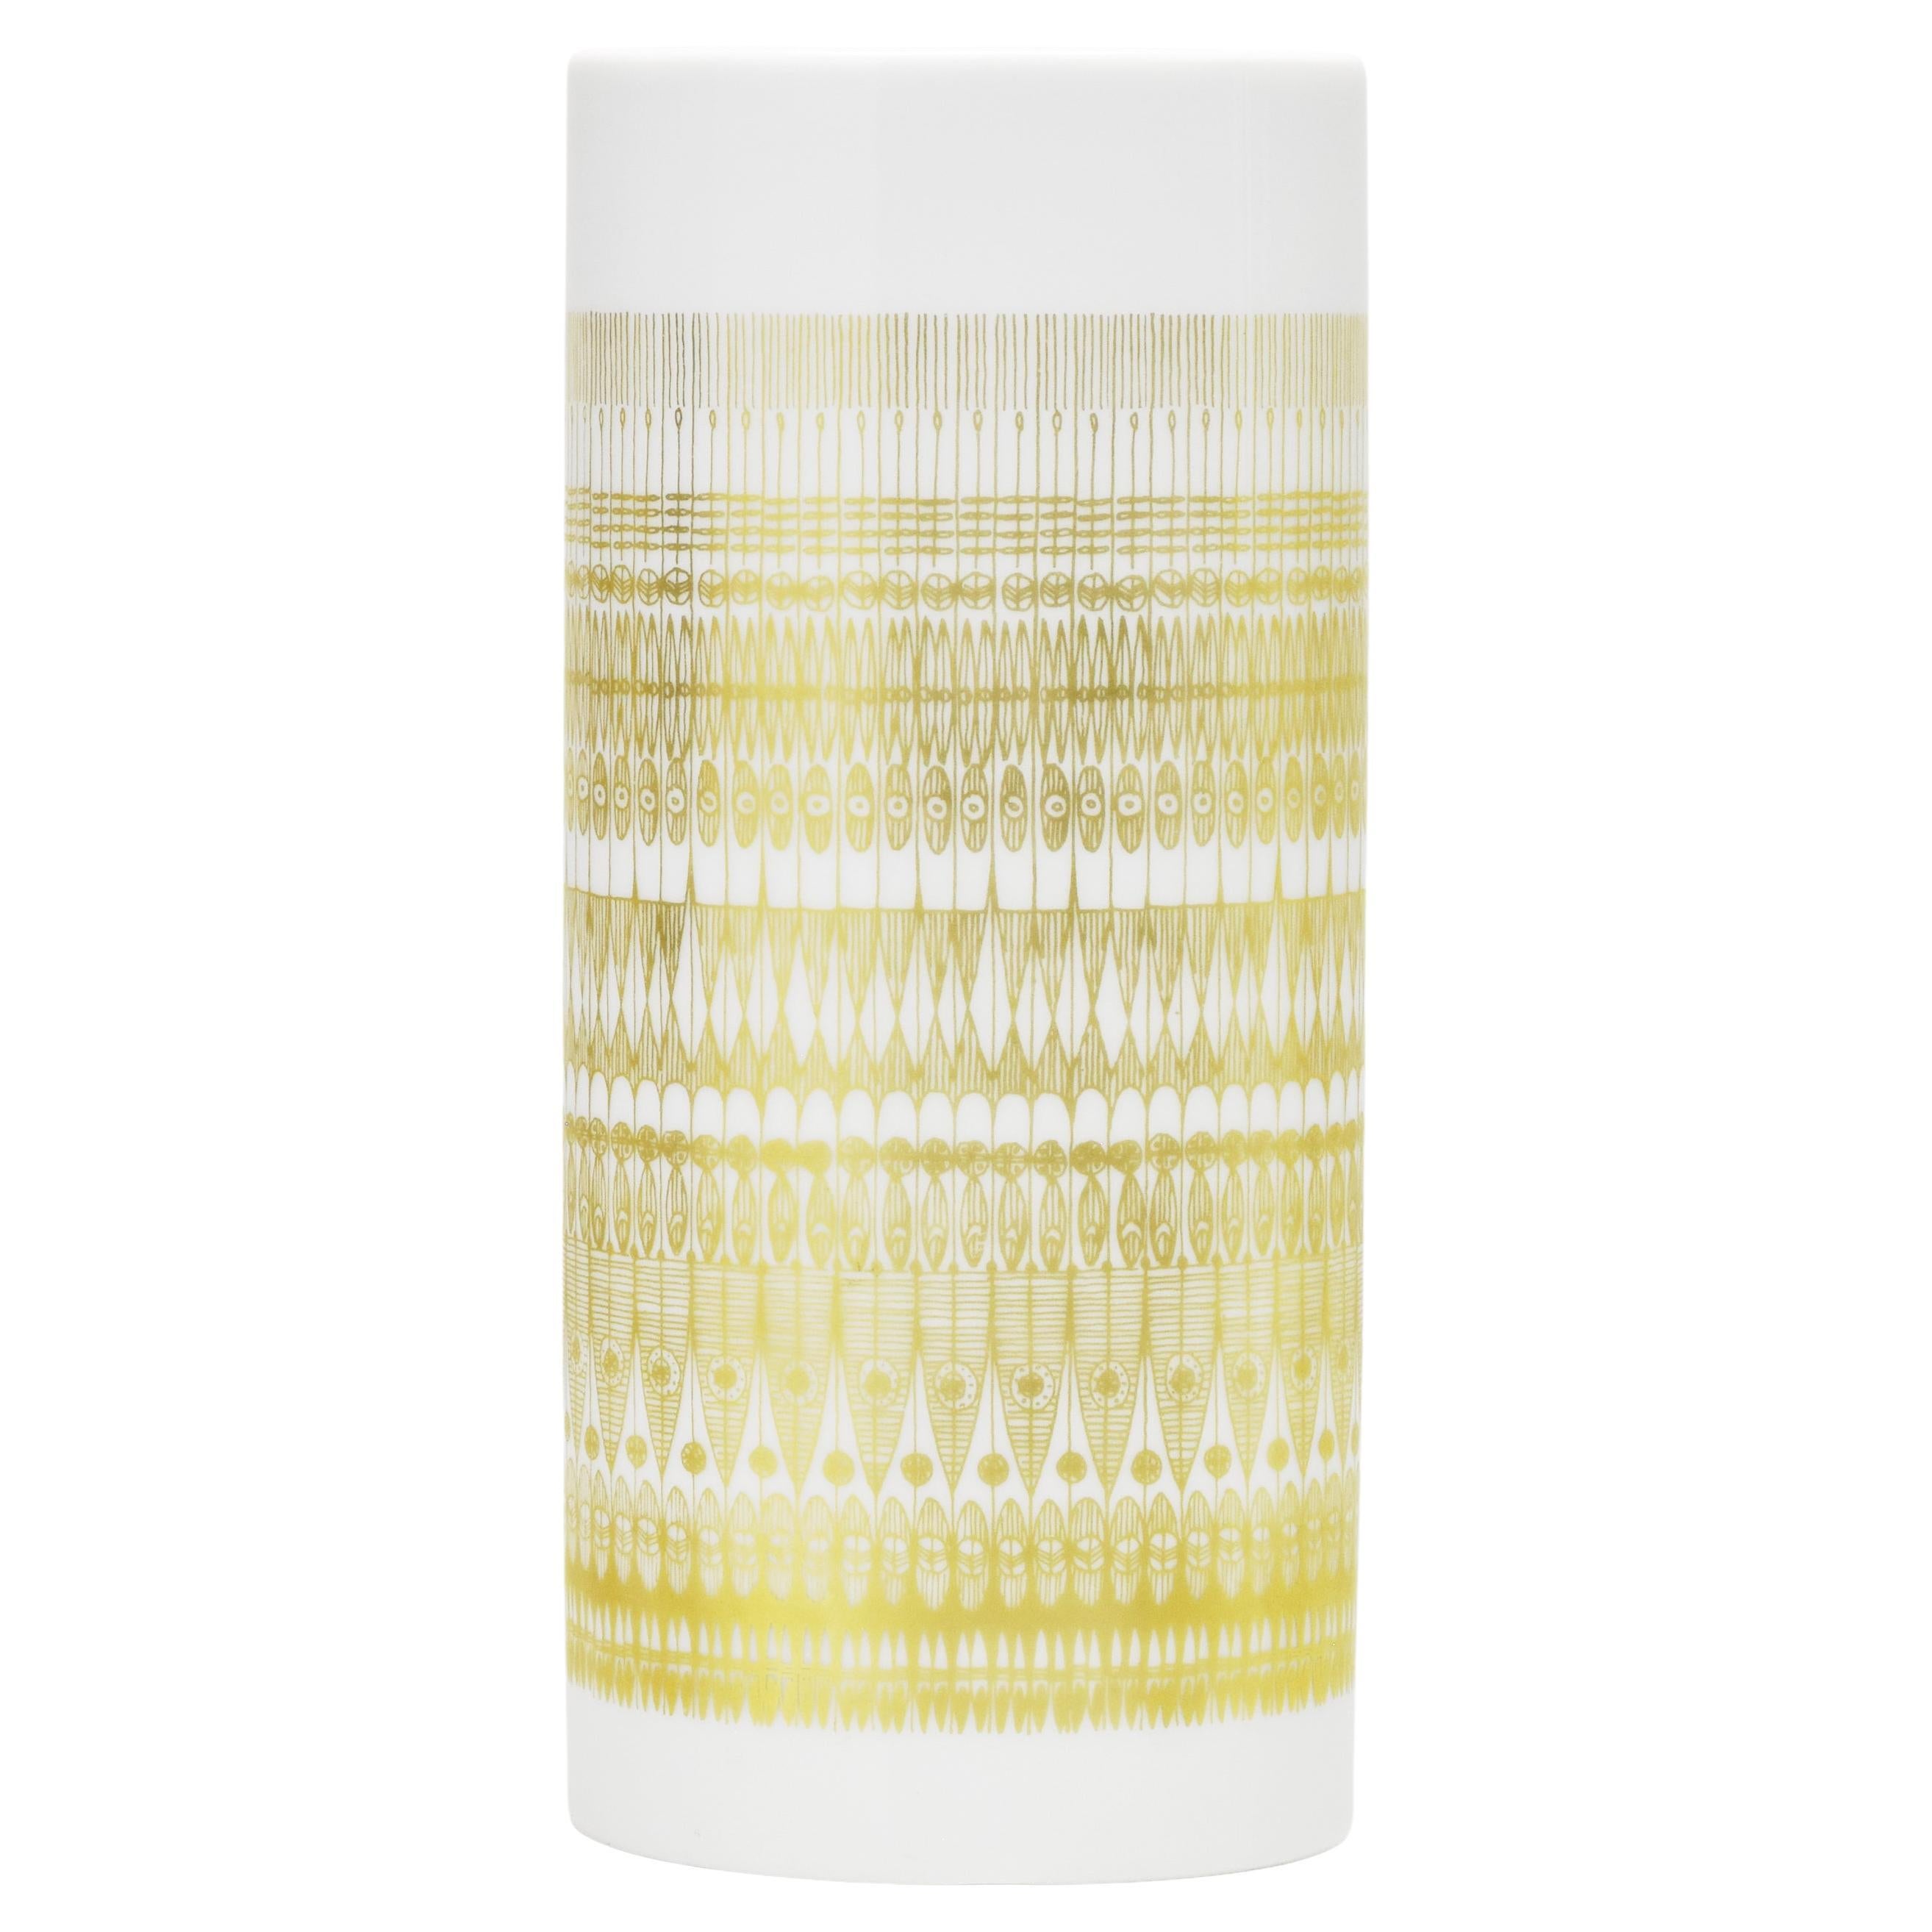 Rosenthal Studio-Linien-Vase, weißes Porzellan, Goldmuster, Design Hans Theo Baumann